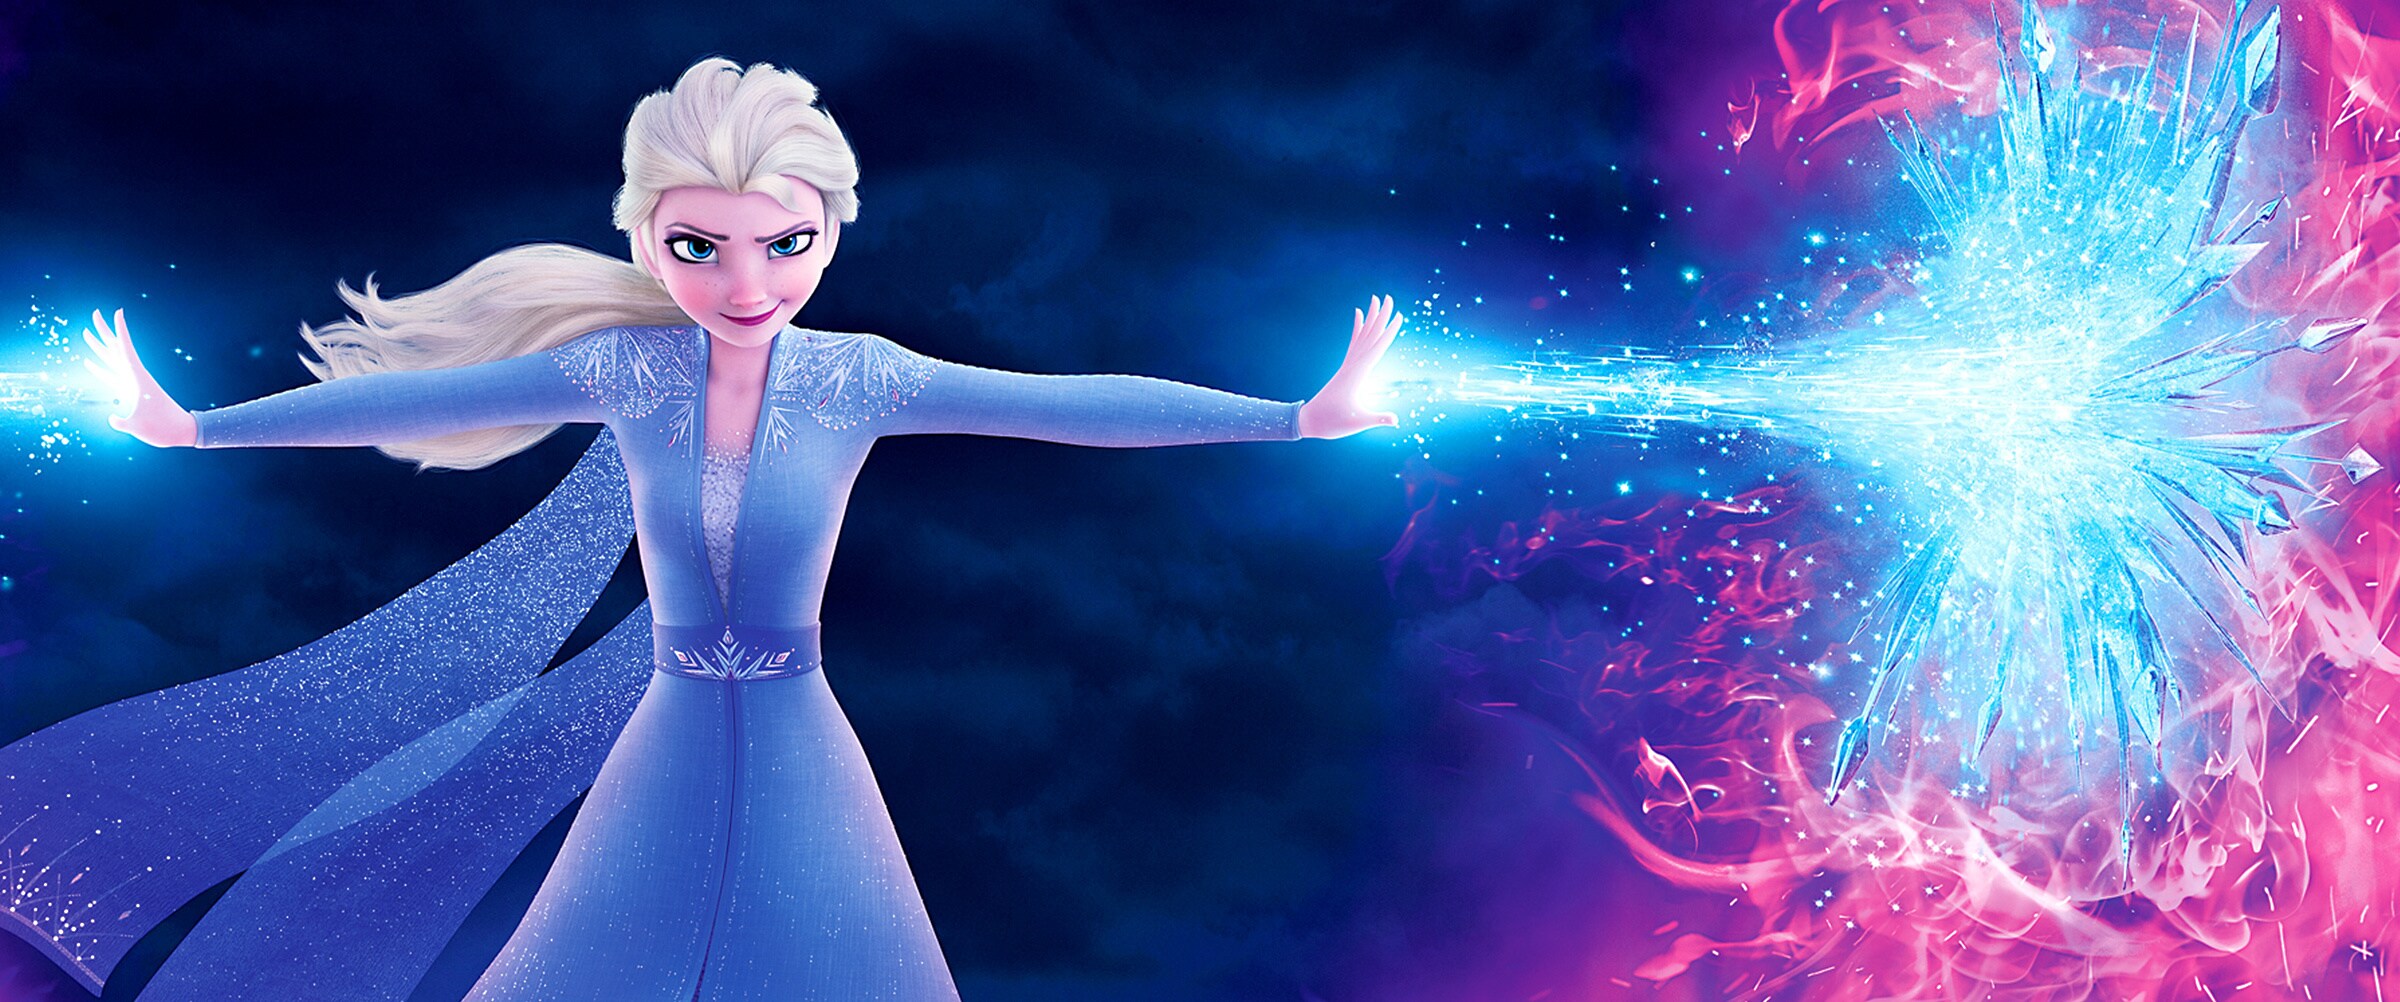 Frozen 2 (2019) - Homepage Hero - Elsa